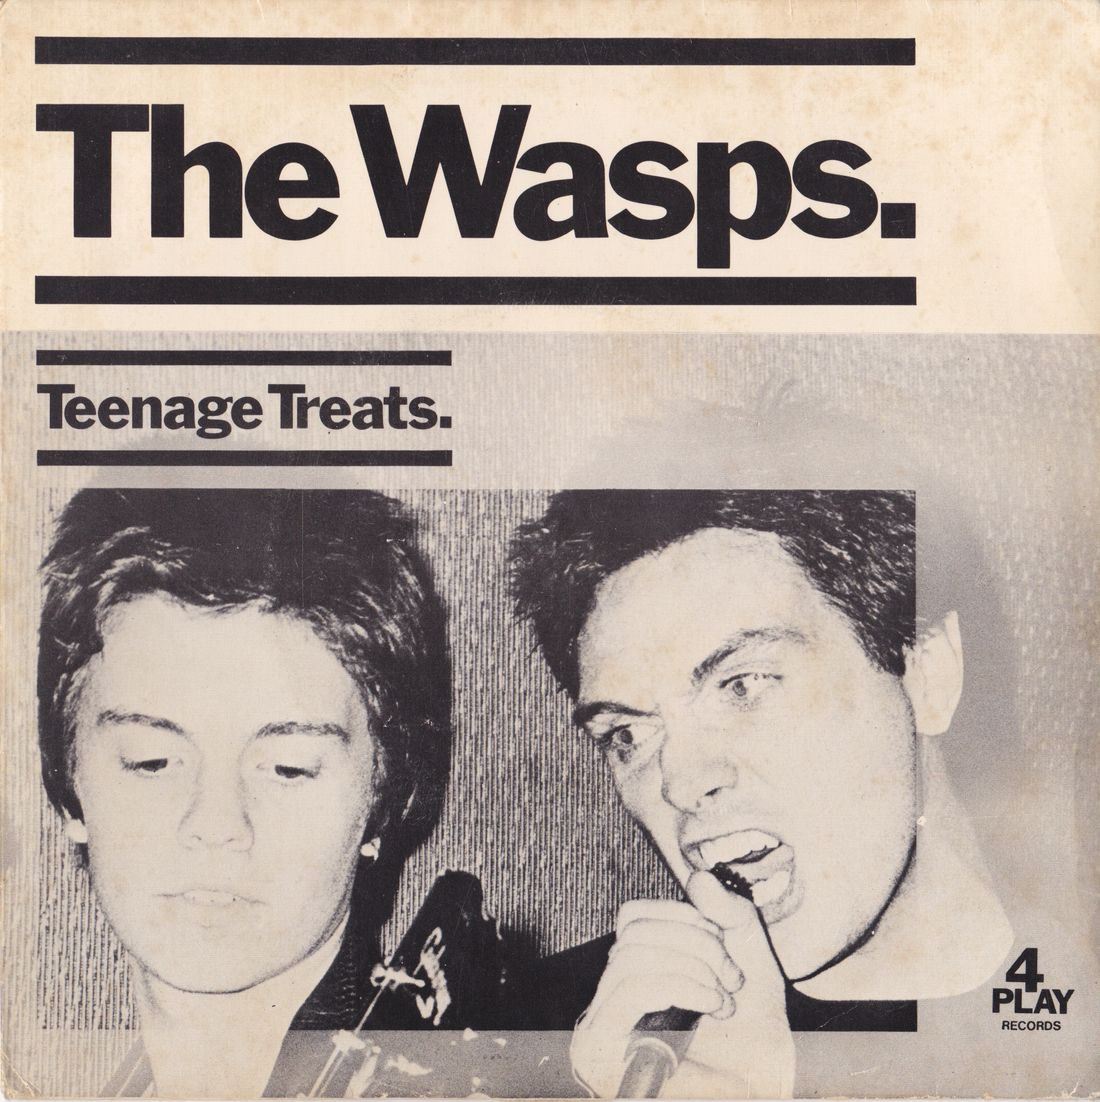 "Teenage Treats" single, 4Play Records 1977
